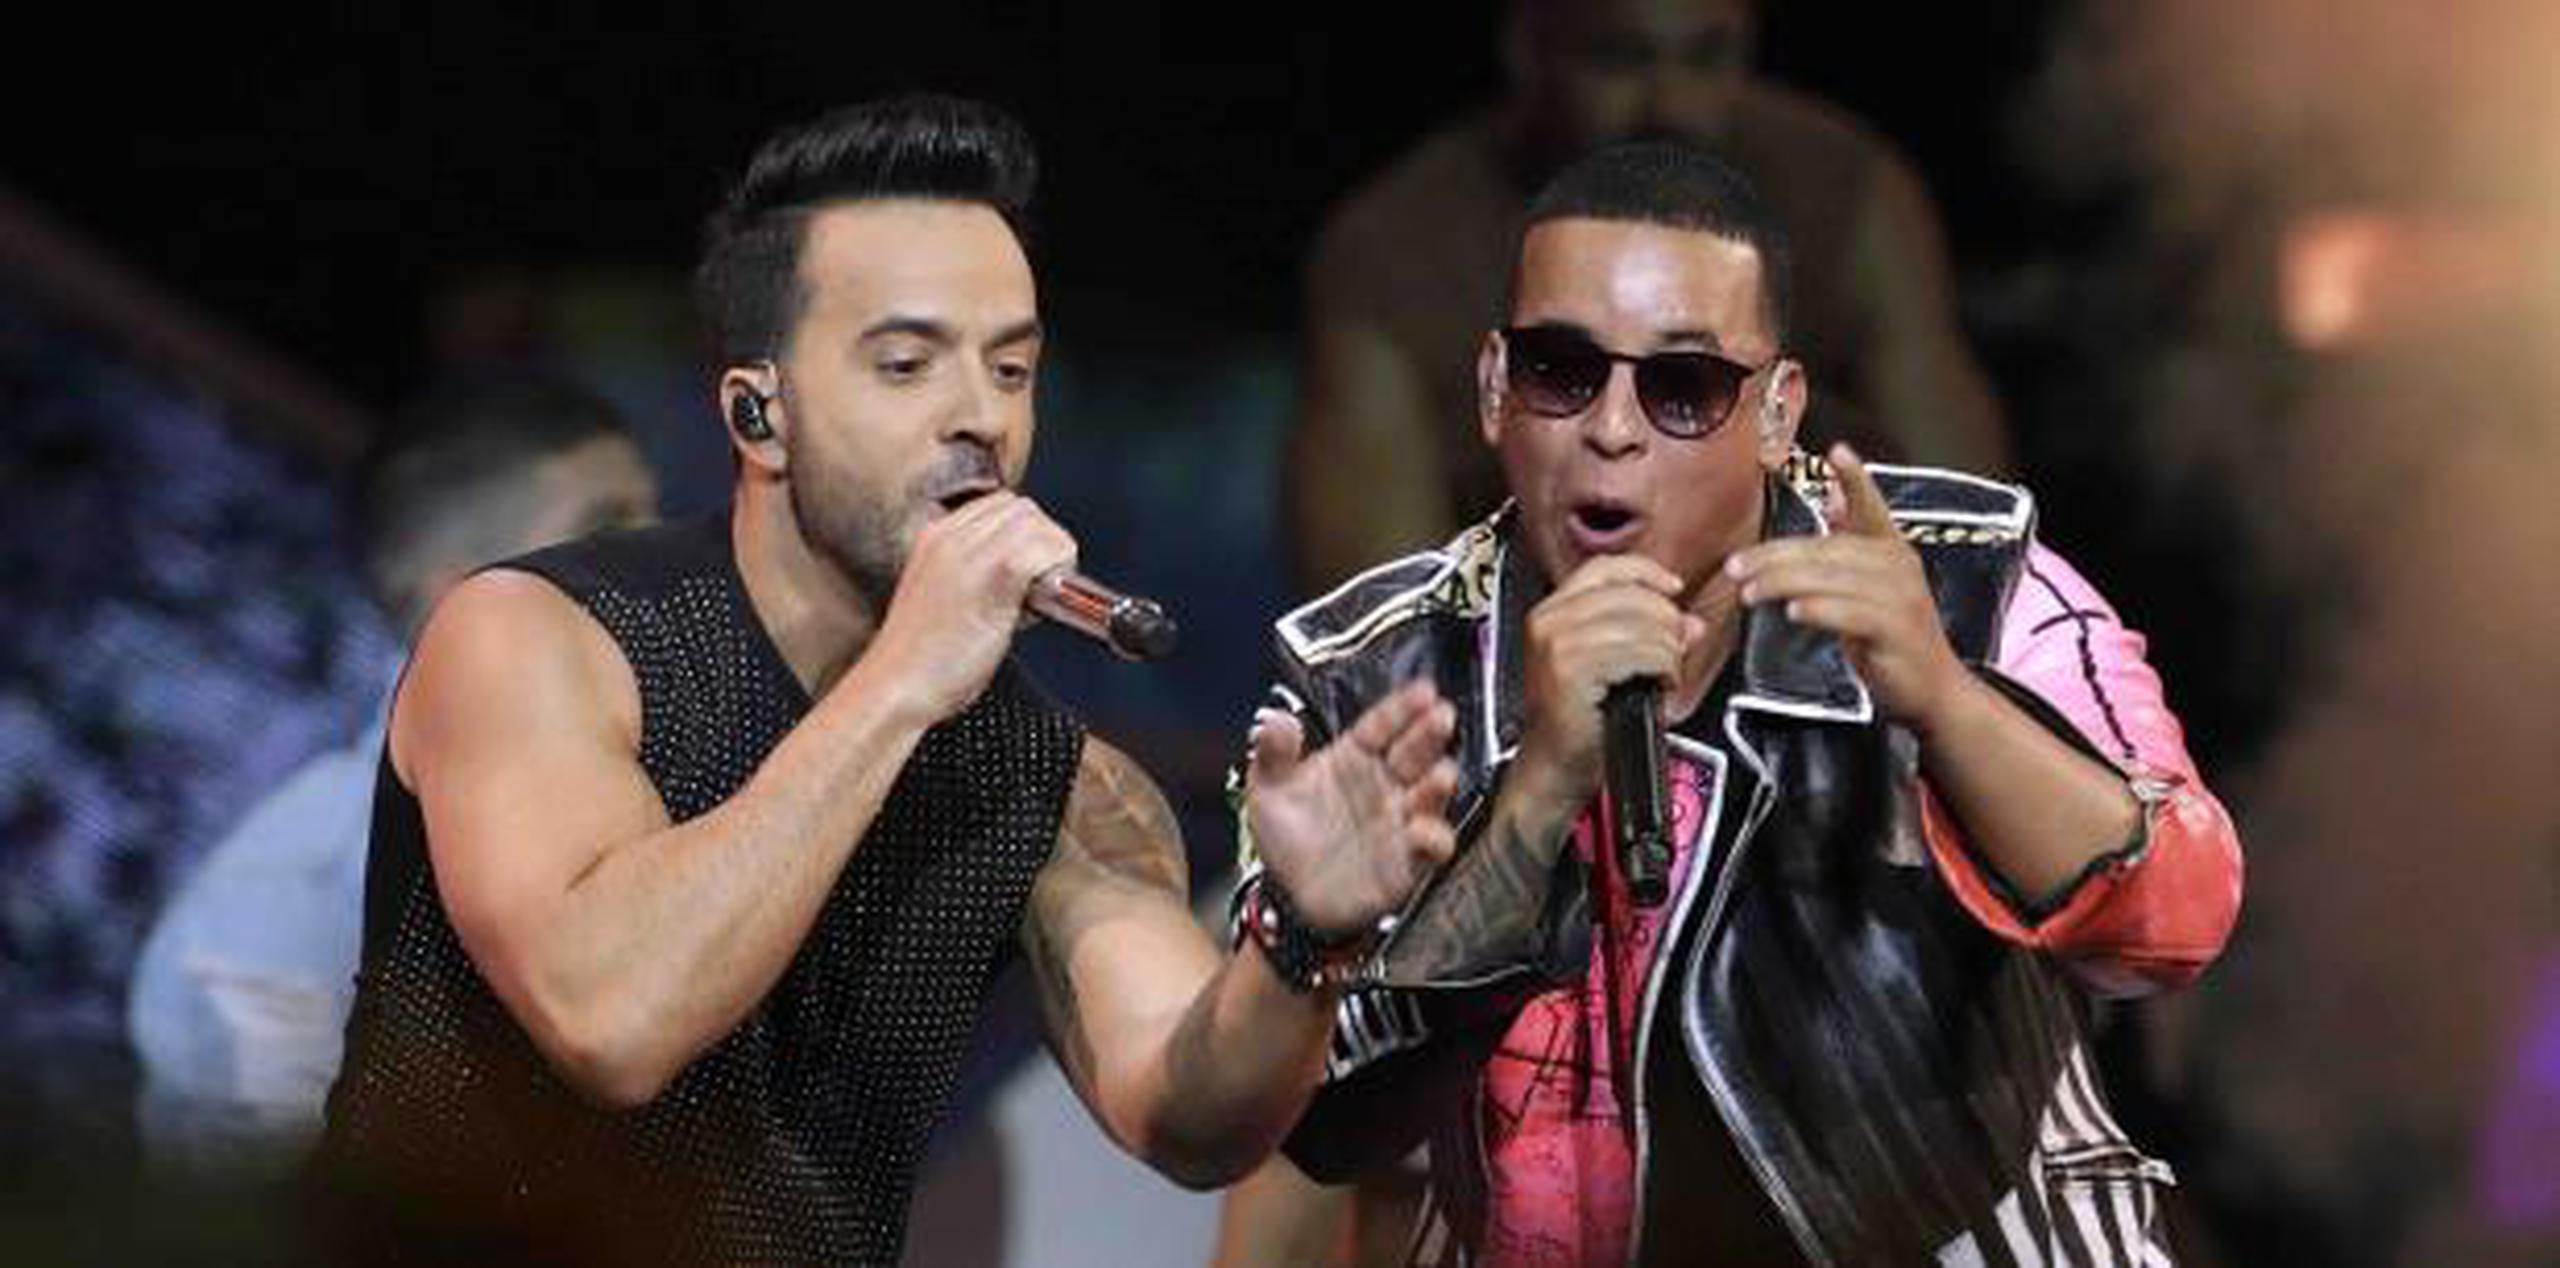 Empire Digital Entertainment Group atribuyó la cancelación a exigencias "impuestas de forma unilateral" por Daddy Yankee, quien habría solicitado no compartir escenario con Luis Fonsi. (Archivo)